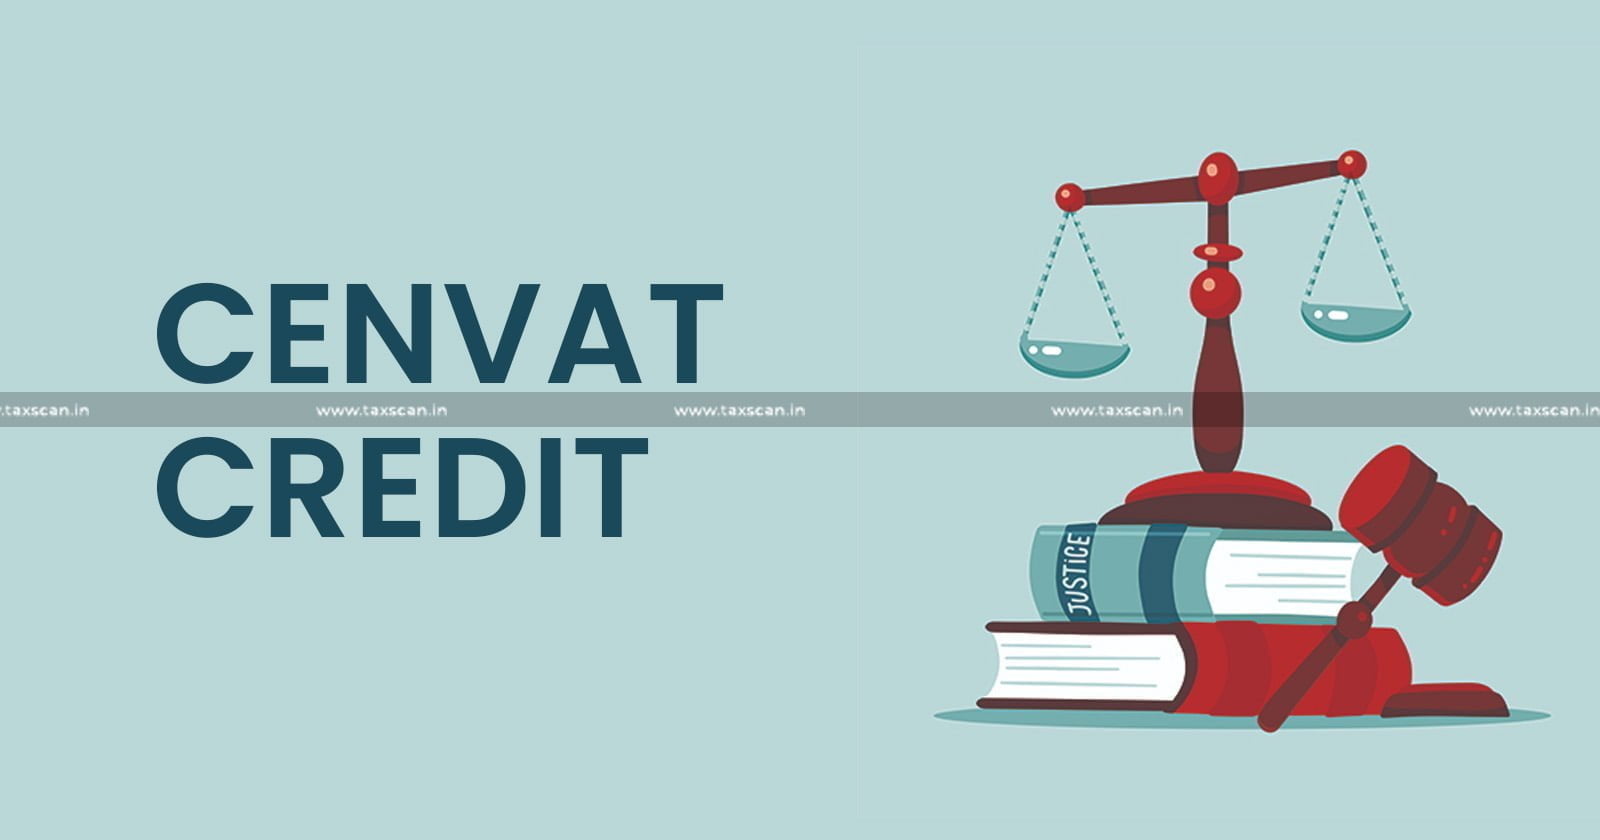 Cenvat Credit - CESTAT - CESTAT Chennai - Excise Duty - Cenvat Credit eligibility - Central Excise Act - CEA Exemption - taxscan